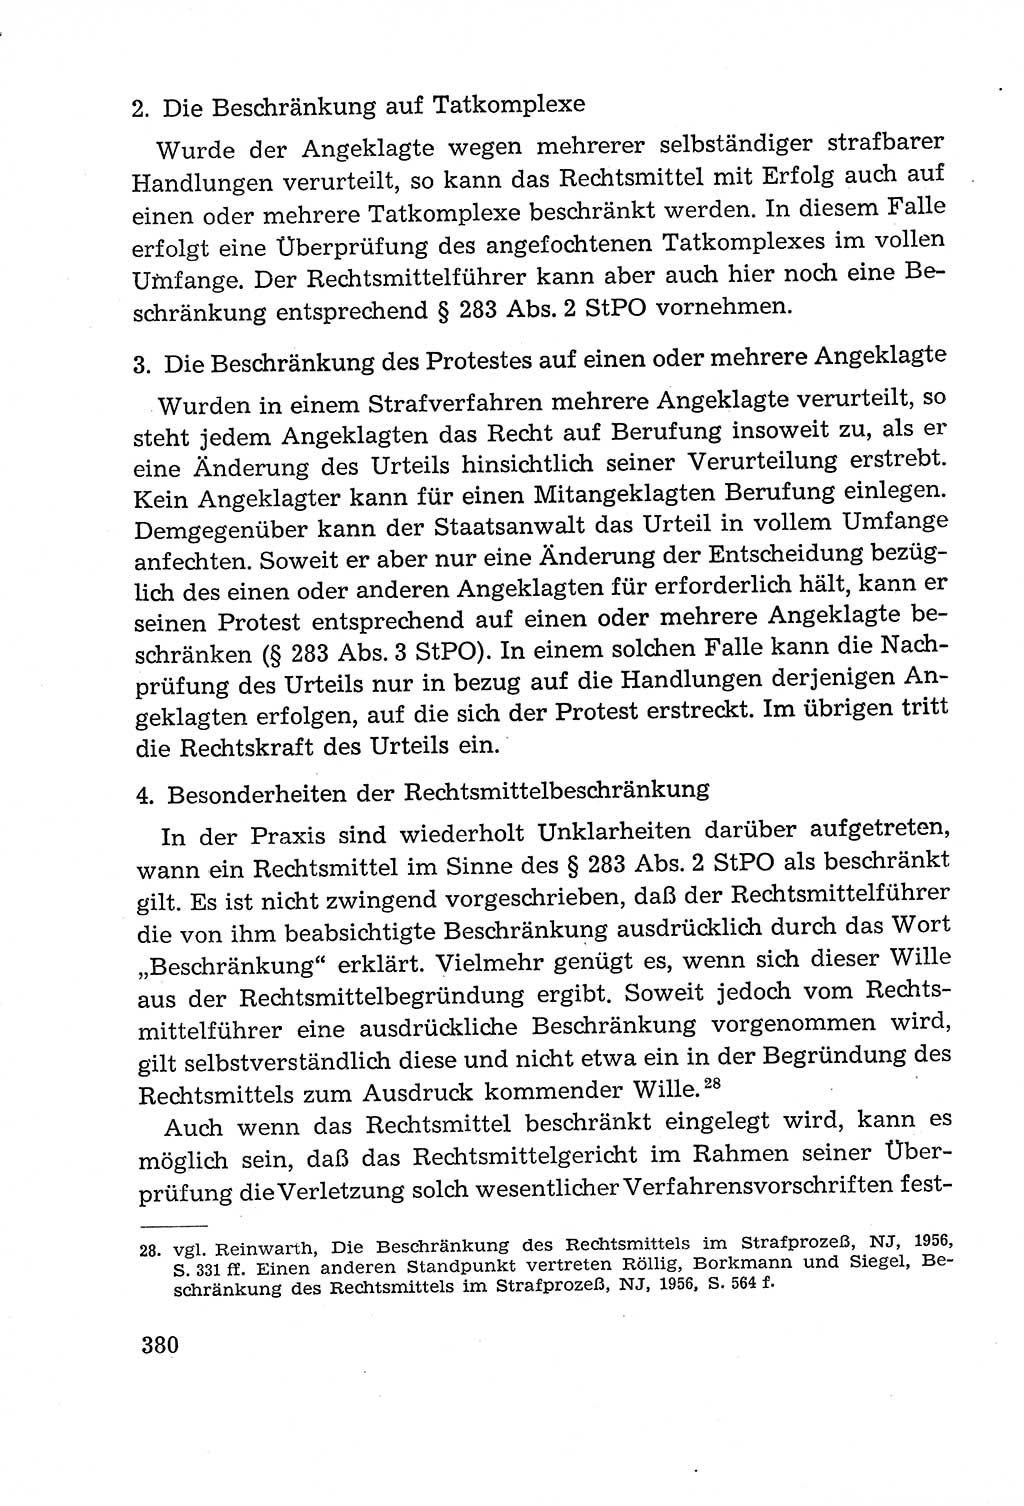 Leitfaden des Strafprozeßrechts der Deutschen Demokratischen Republik (DDR) 1959, Seite 380 (LF StPR DDR 1959, S. 380)